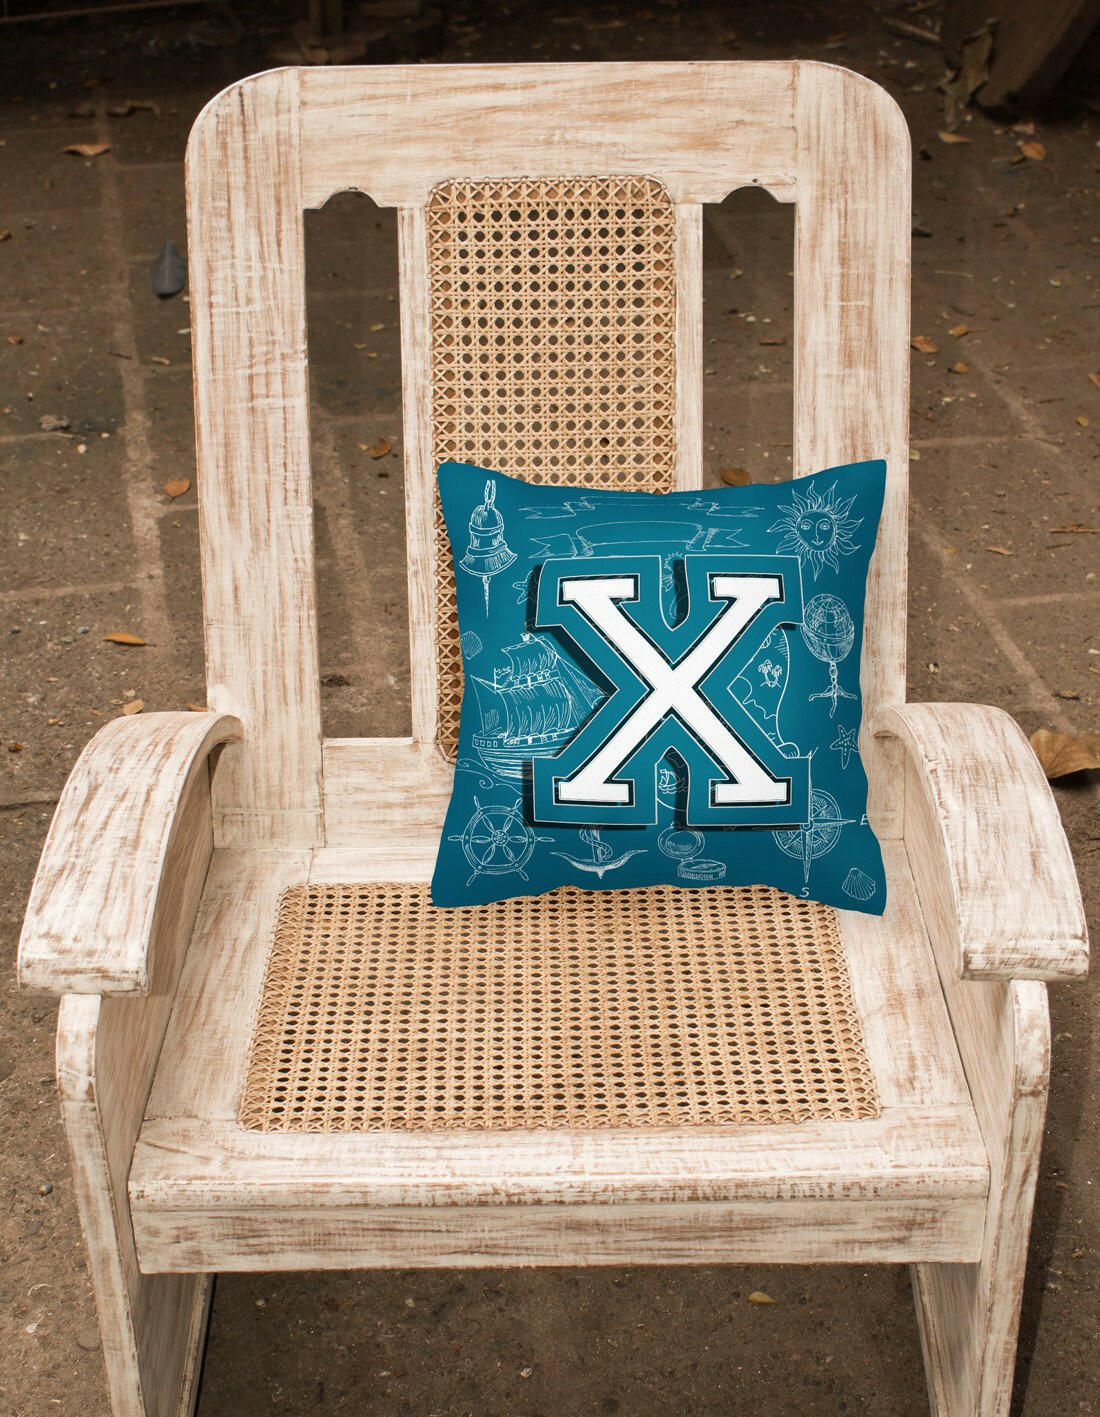 Letter X Sea Doodles Initial Alphabet Canvas Fabric Decorative Pillow CJ2014-XPW1414 by Caroline's Treasures